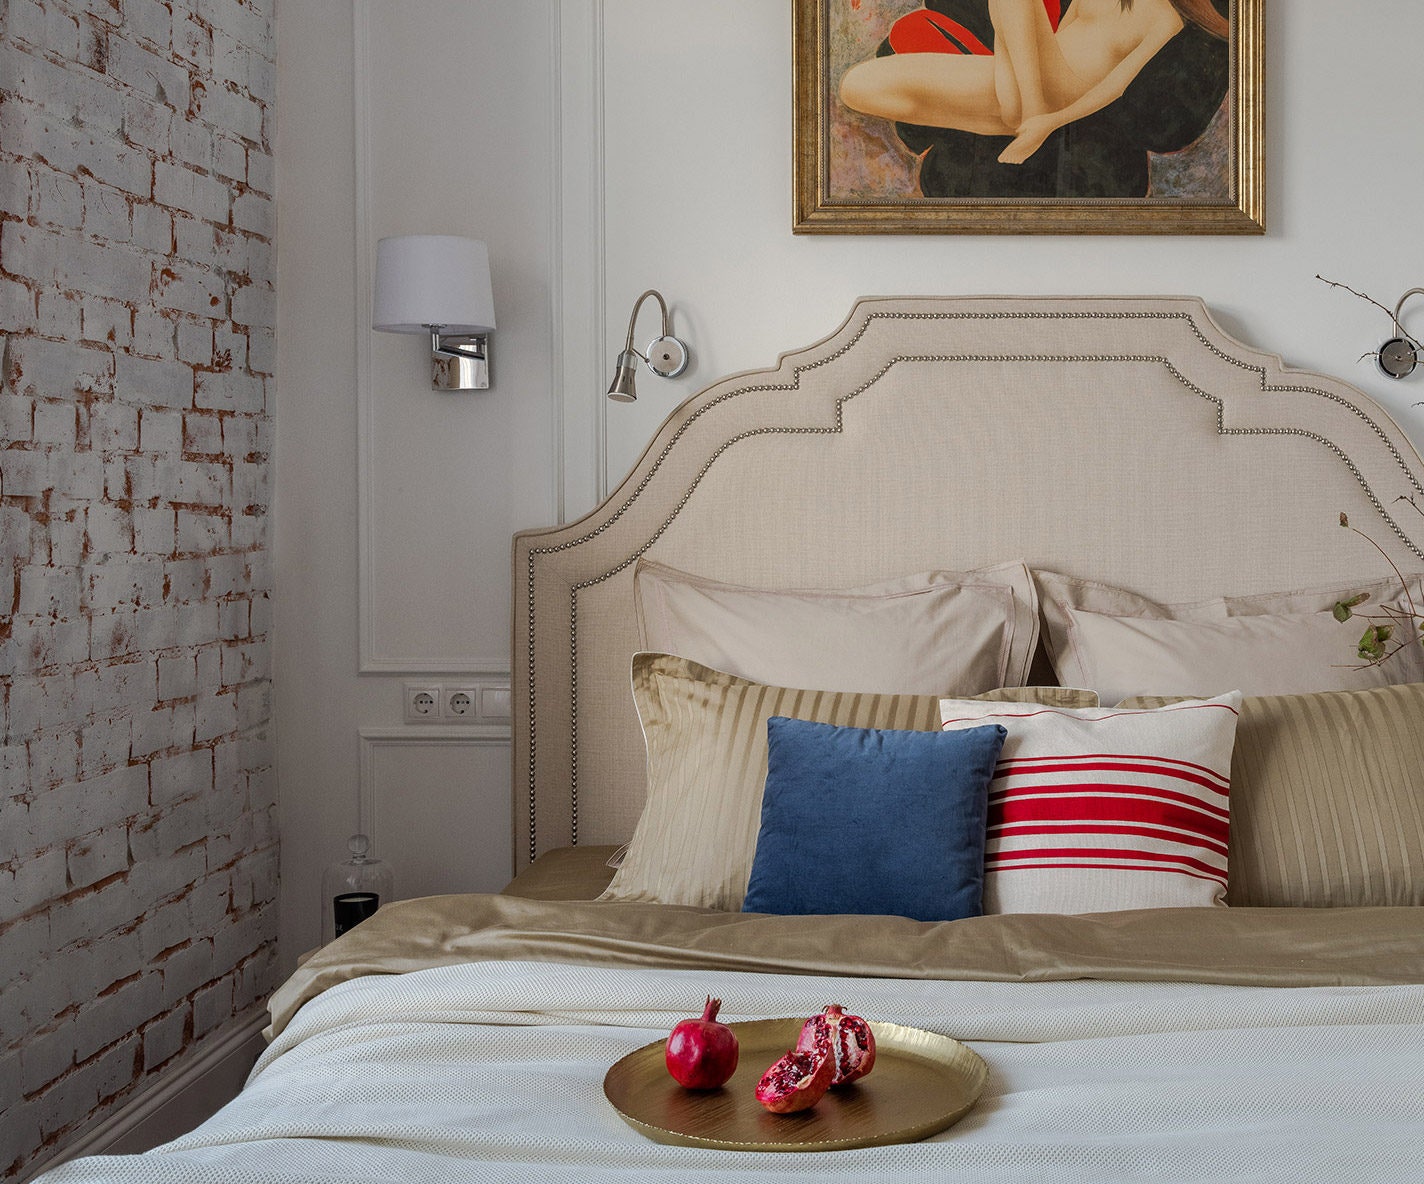 Квартира по дизайну Ольги Кондратовой. Спальня. Кровать Dantone Home картина из коллекции заказчицы.